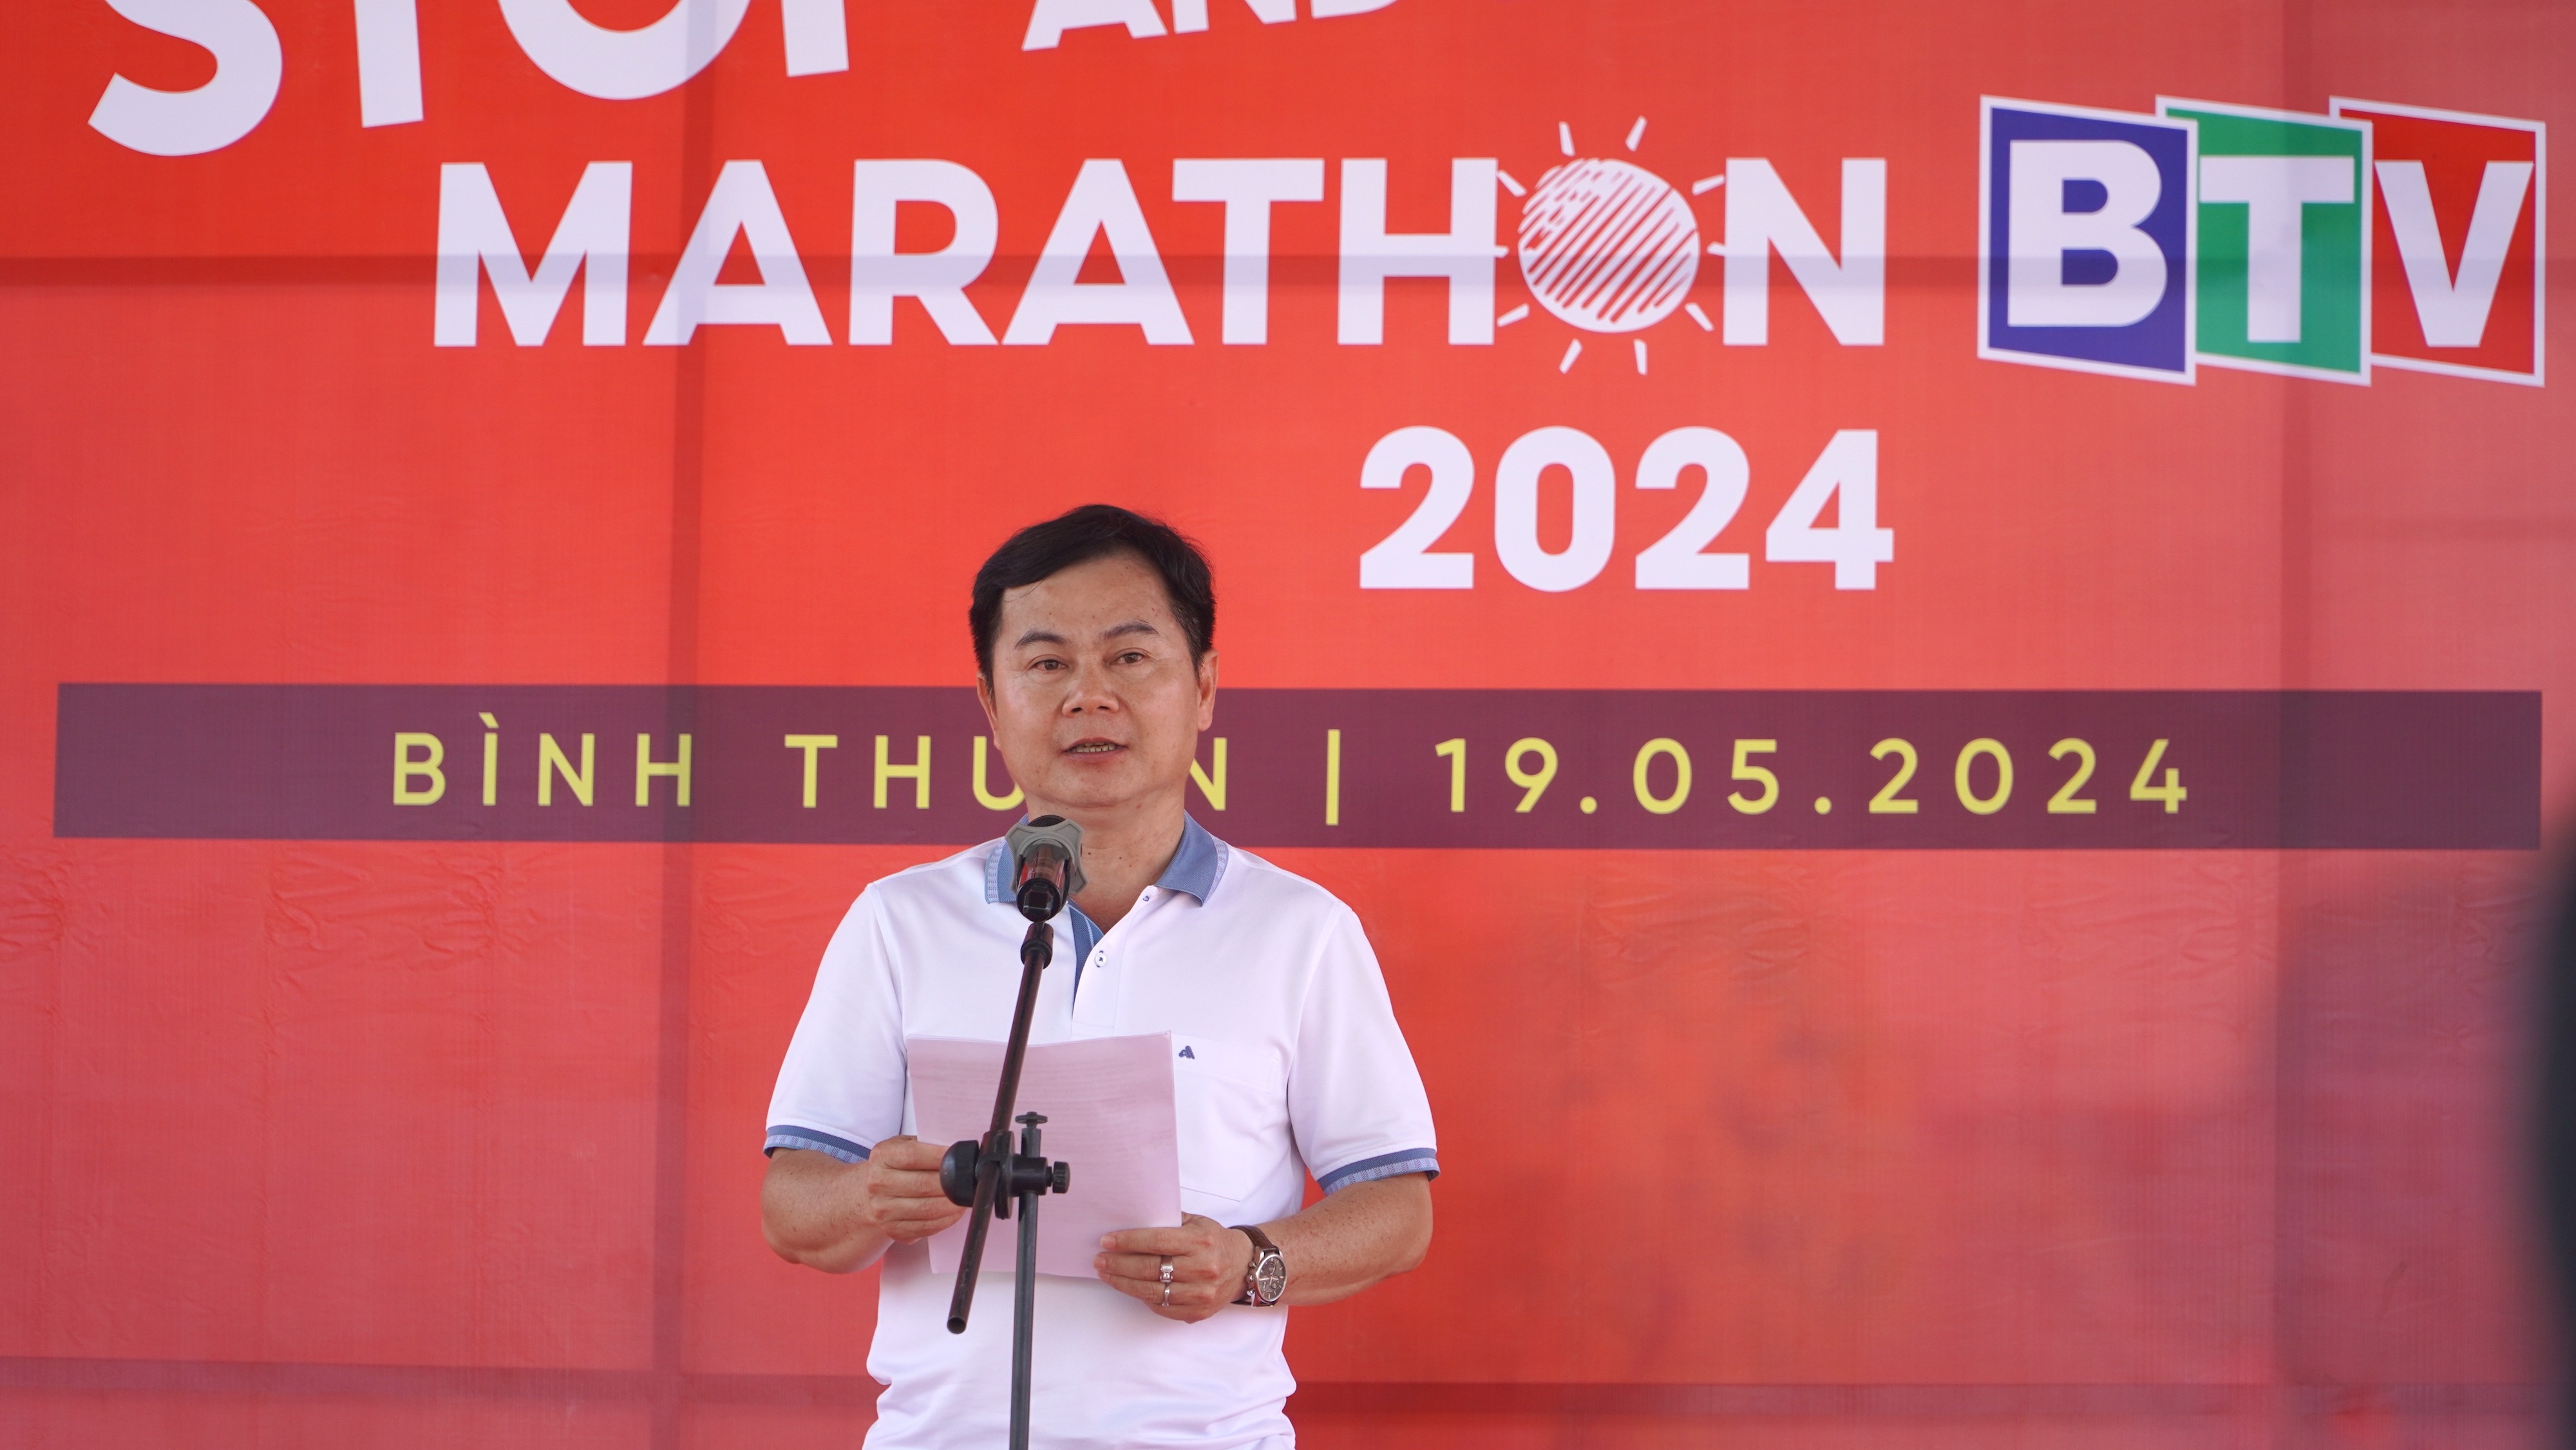 Hậu trường - Hơn 4.500 VĐV tham gia giải marathon trên cung đường đẹp nhất Việt Nam (Hình 2).